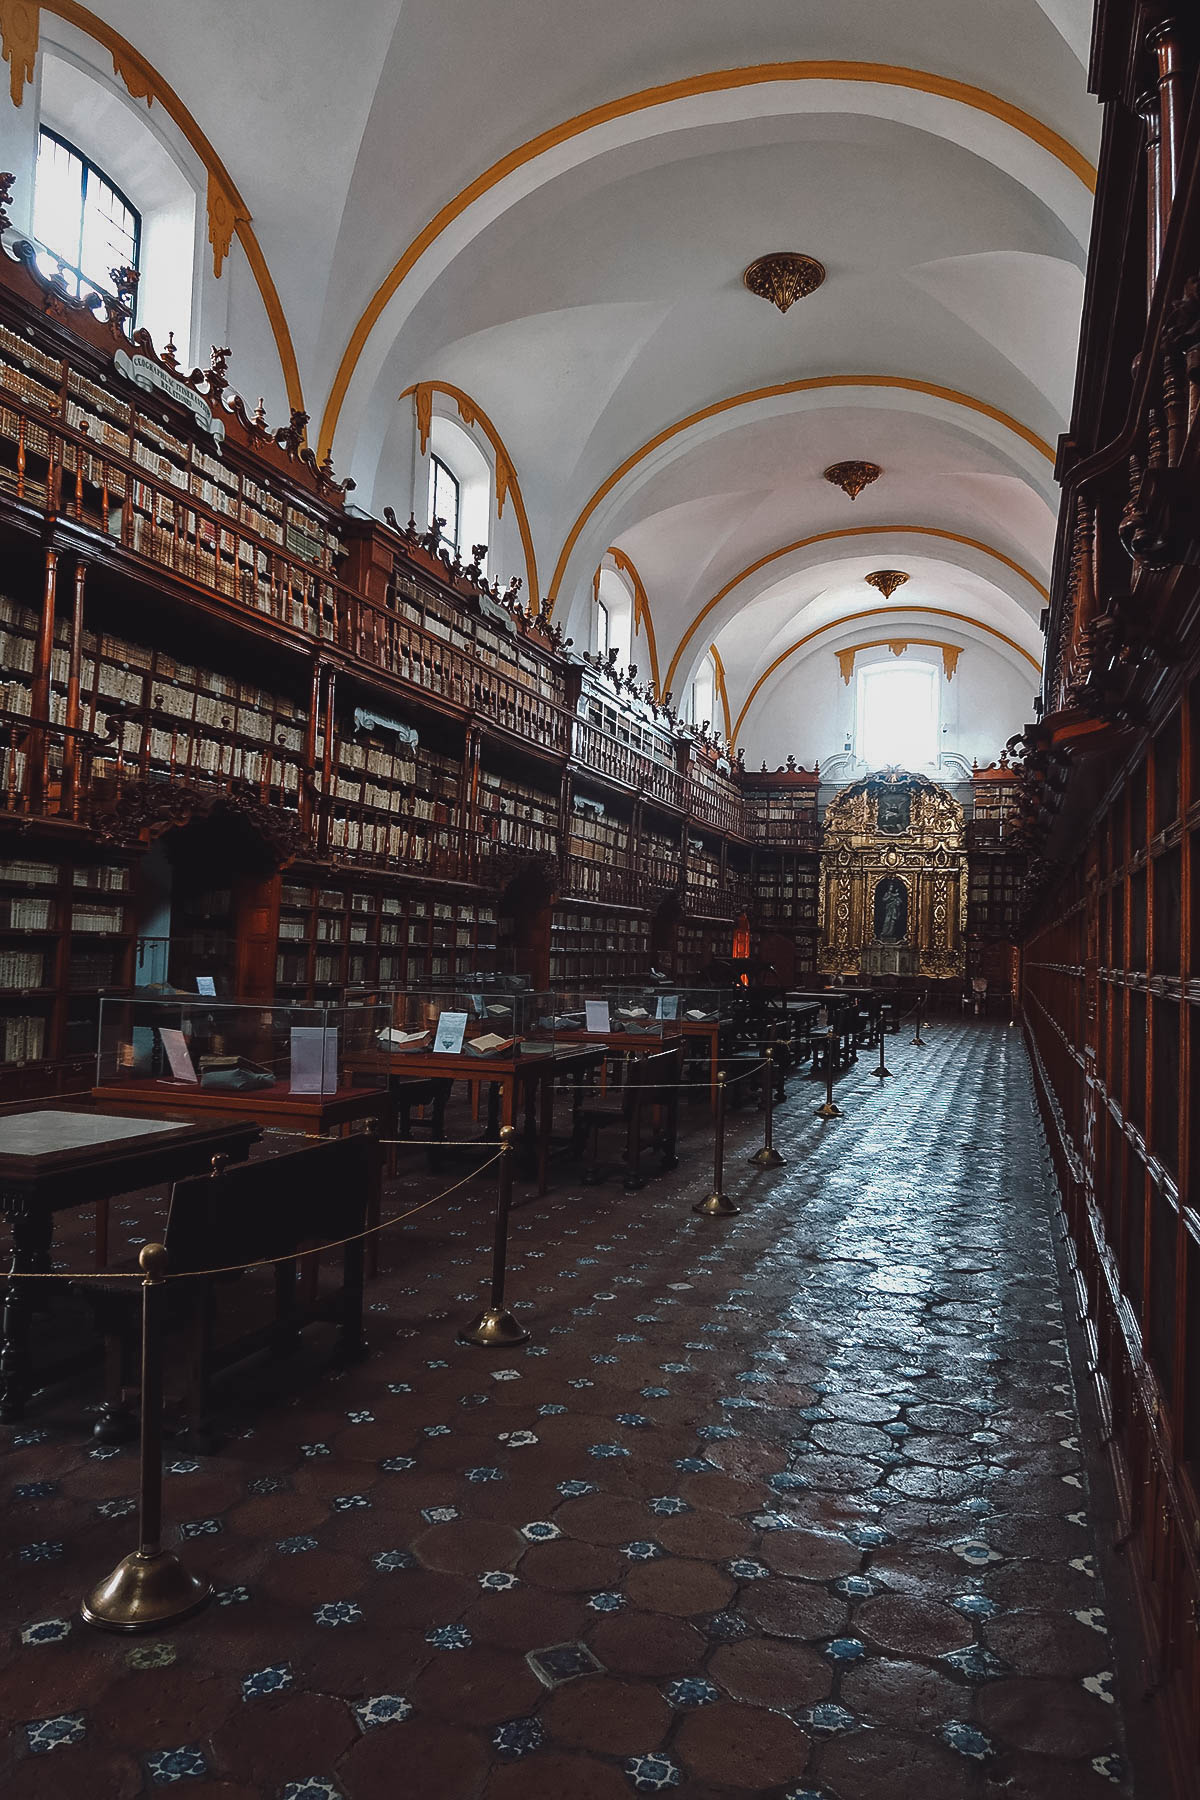 Biblioteca Palafoxiana in Puebla